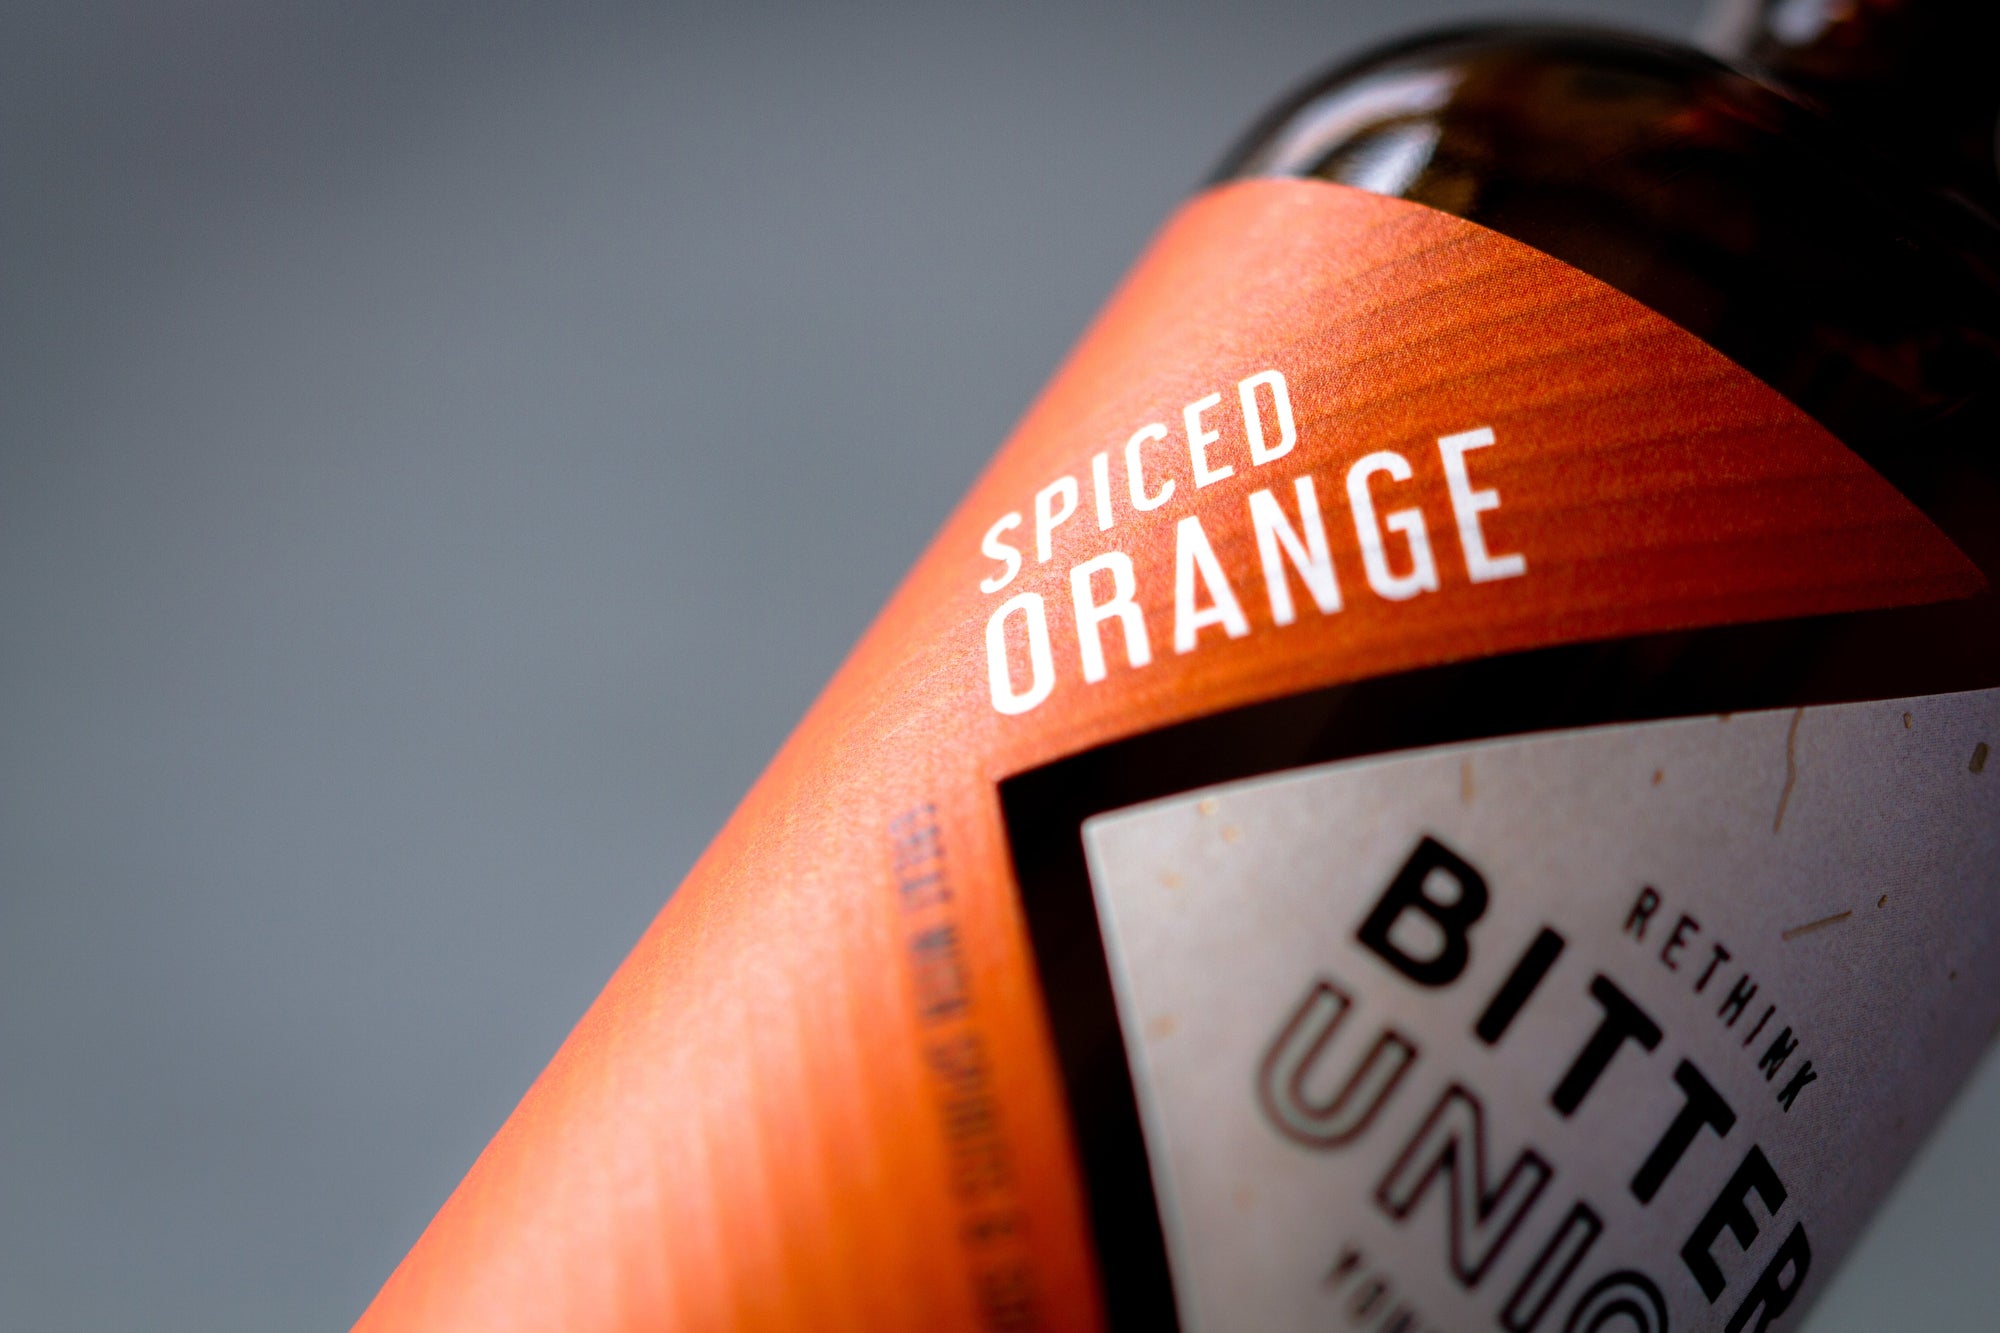 Bottle of Bitter Union Spiced Orange, 31.5% - The Spirits Room